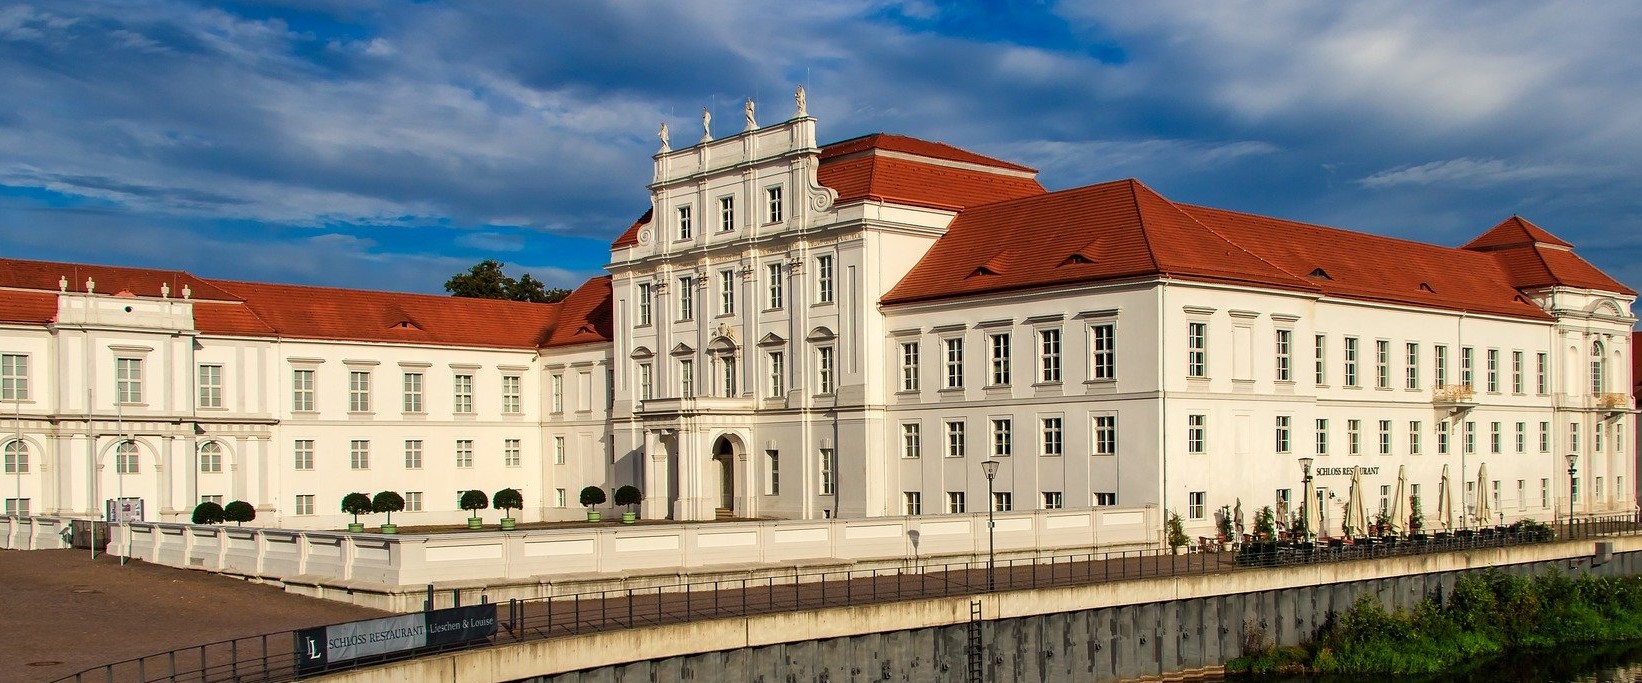 IPM konzipiert die Holdingssteuerung in der Stadt Oranienburg - Schloss Oranienburg